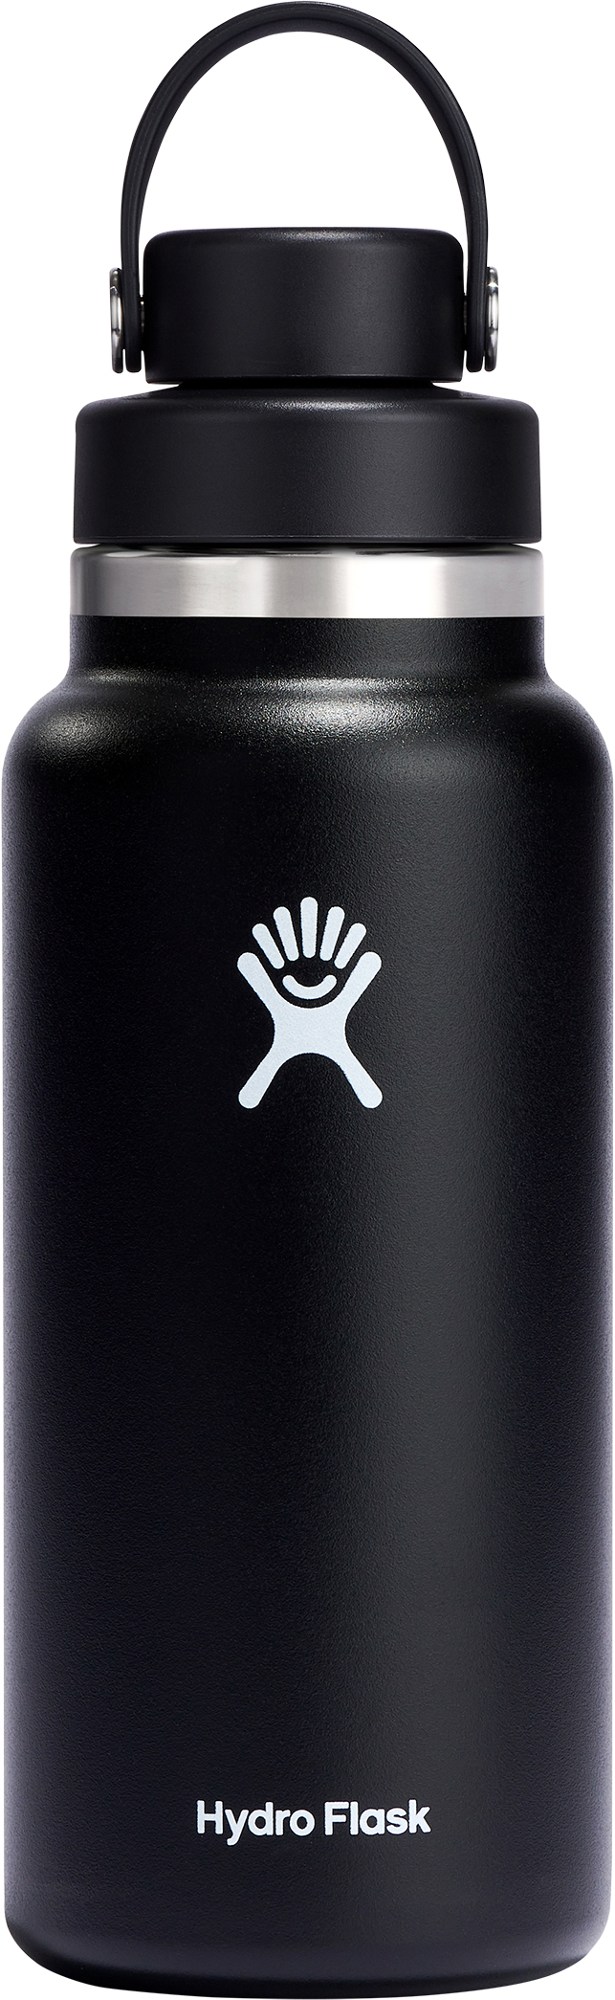 Вакуумная бутылка для воды с широким горлышком и гибкой крышкой - 32 эт. унция Hydro Flask, черный